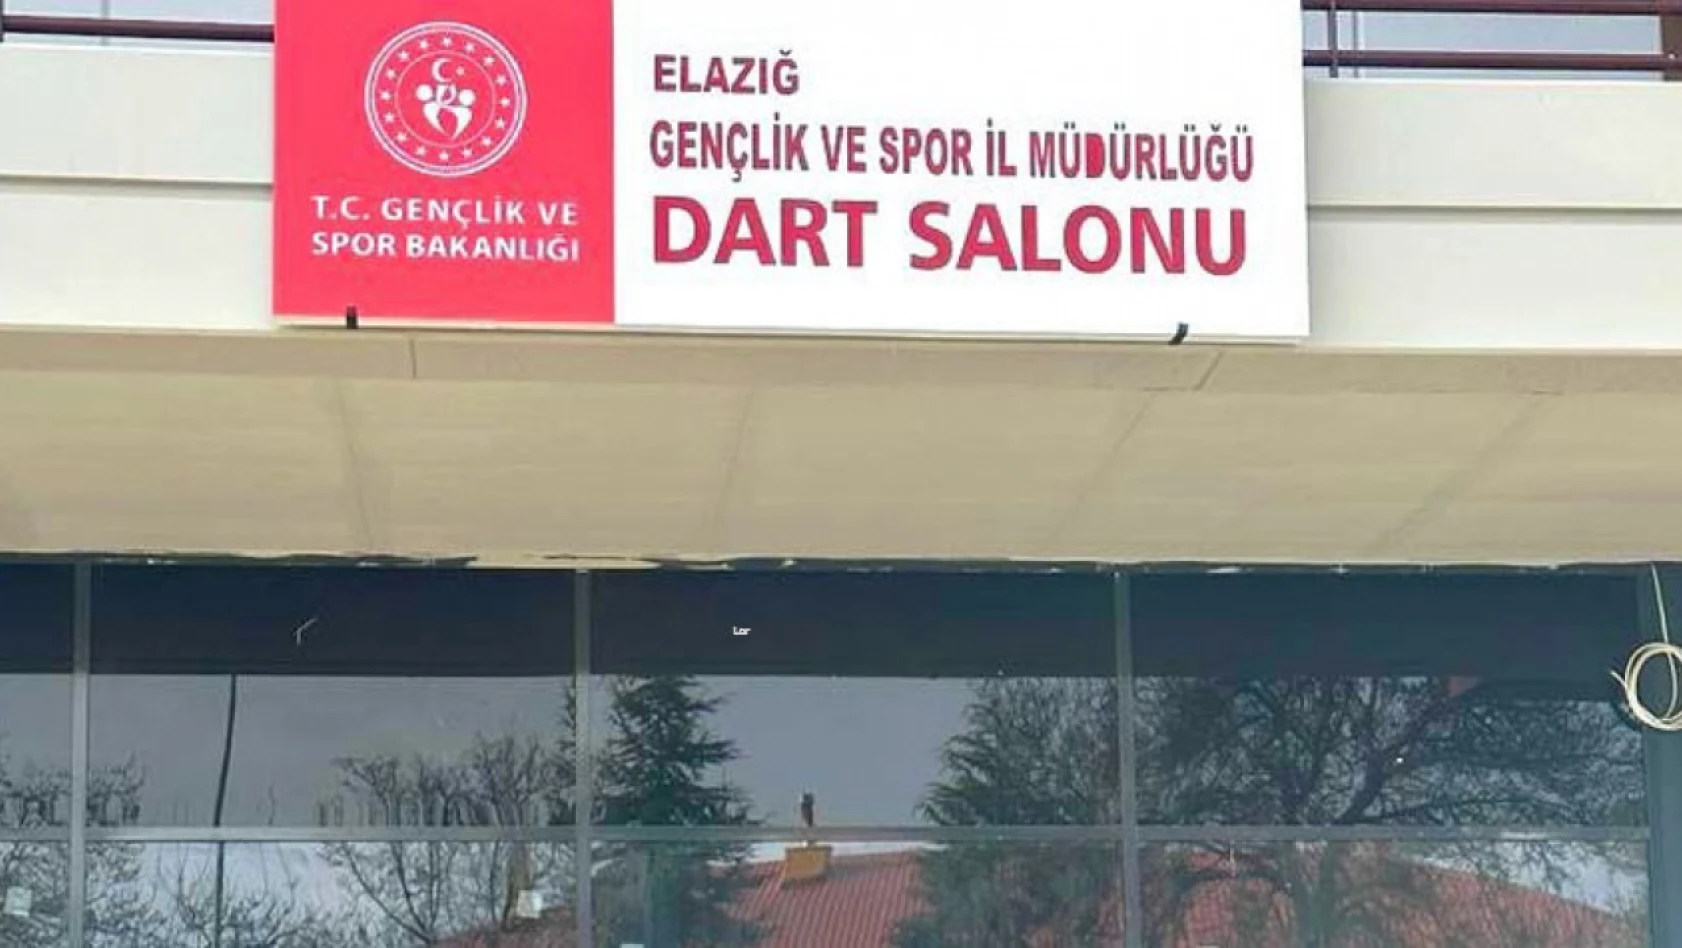 Elazığ Atatürk  Stadyumu Dart Salonu Açılışı İçin Geri  Sayım Başladı